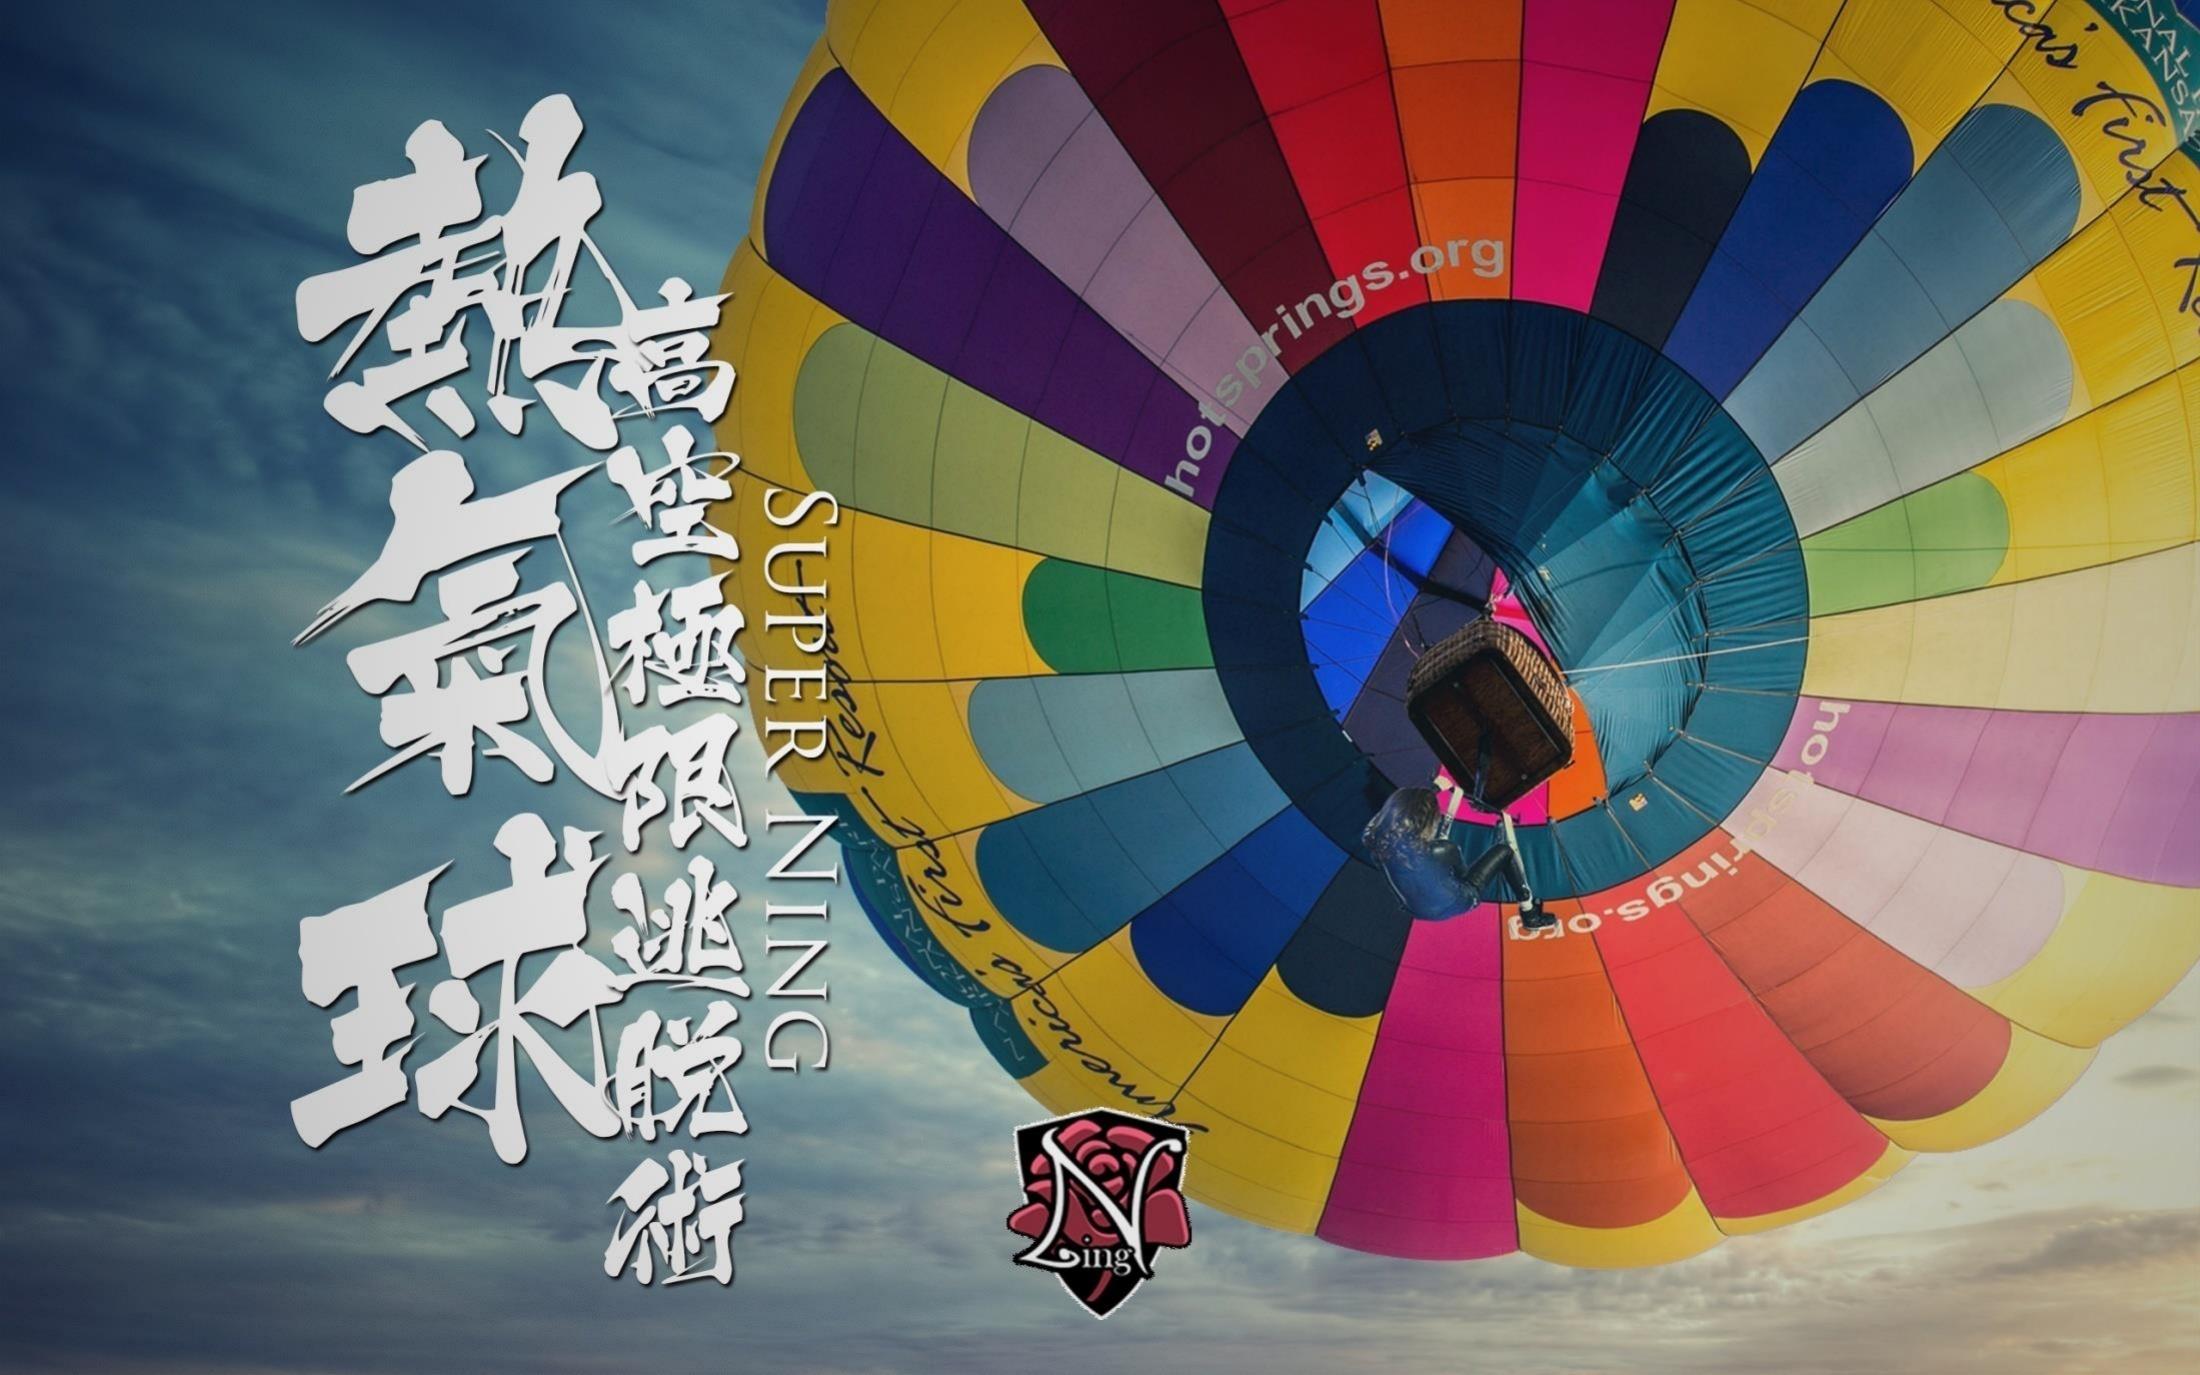 吉尼斯《热气球高空极限逃脱术》大型事件营销策划 魔术演出